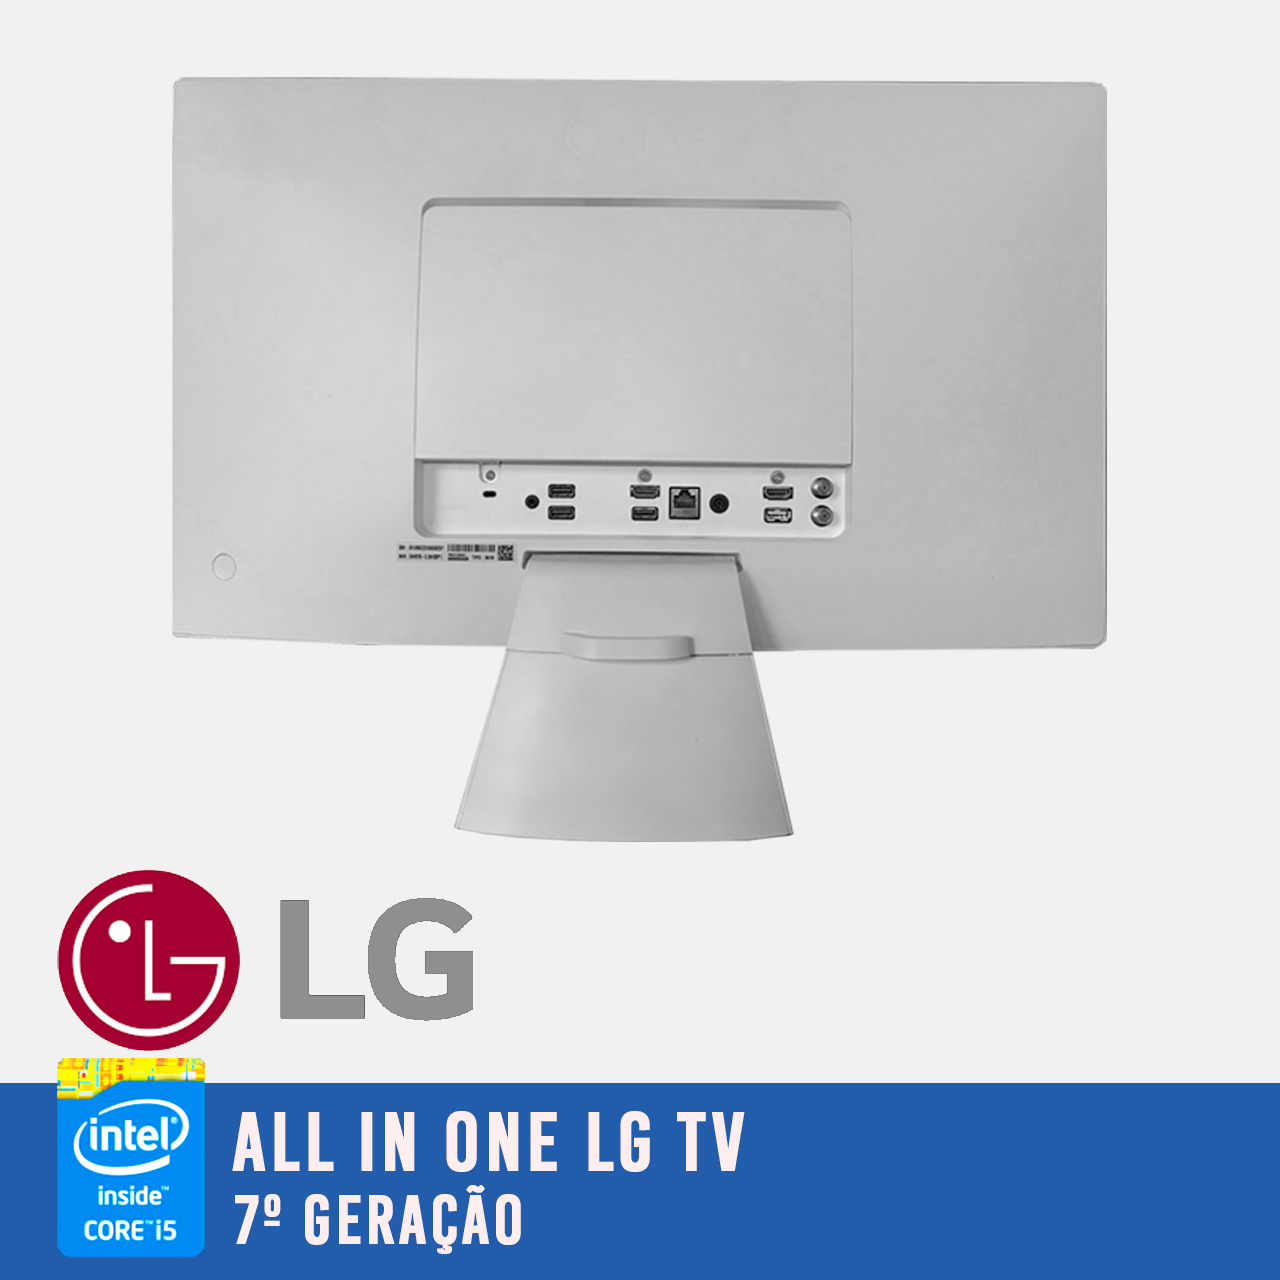 All in one LG 24V570 Intel i5 de 7a. geração e tela de  24 polegadas